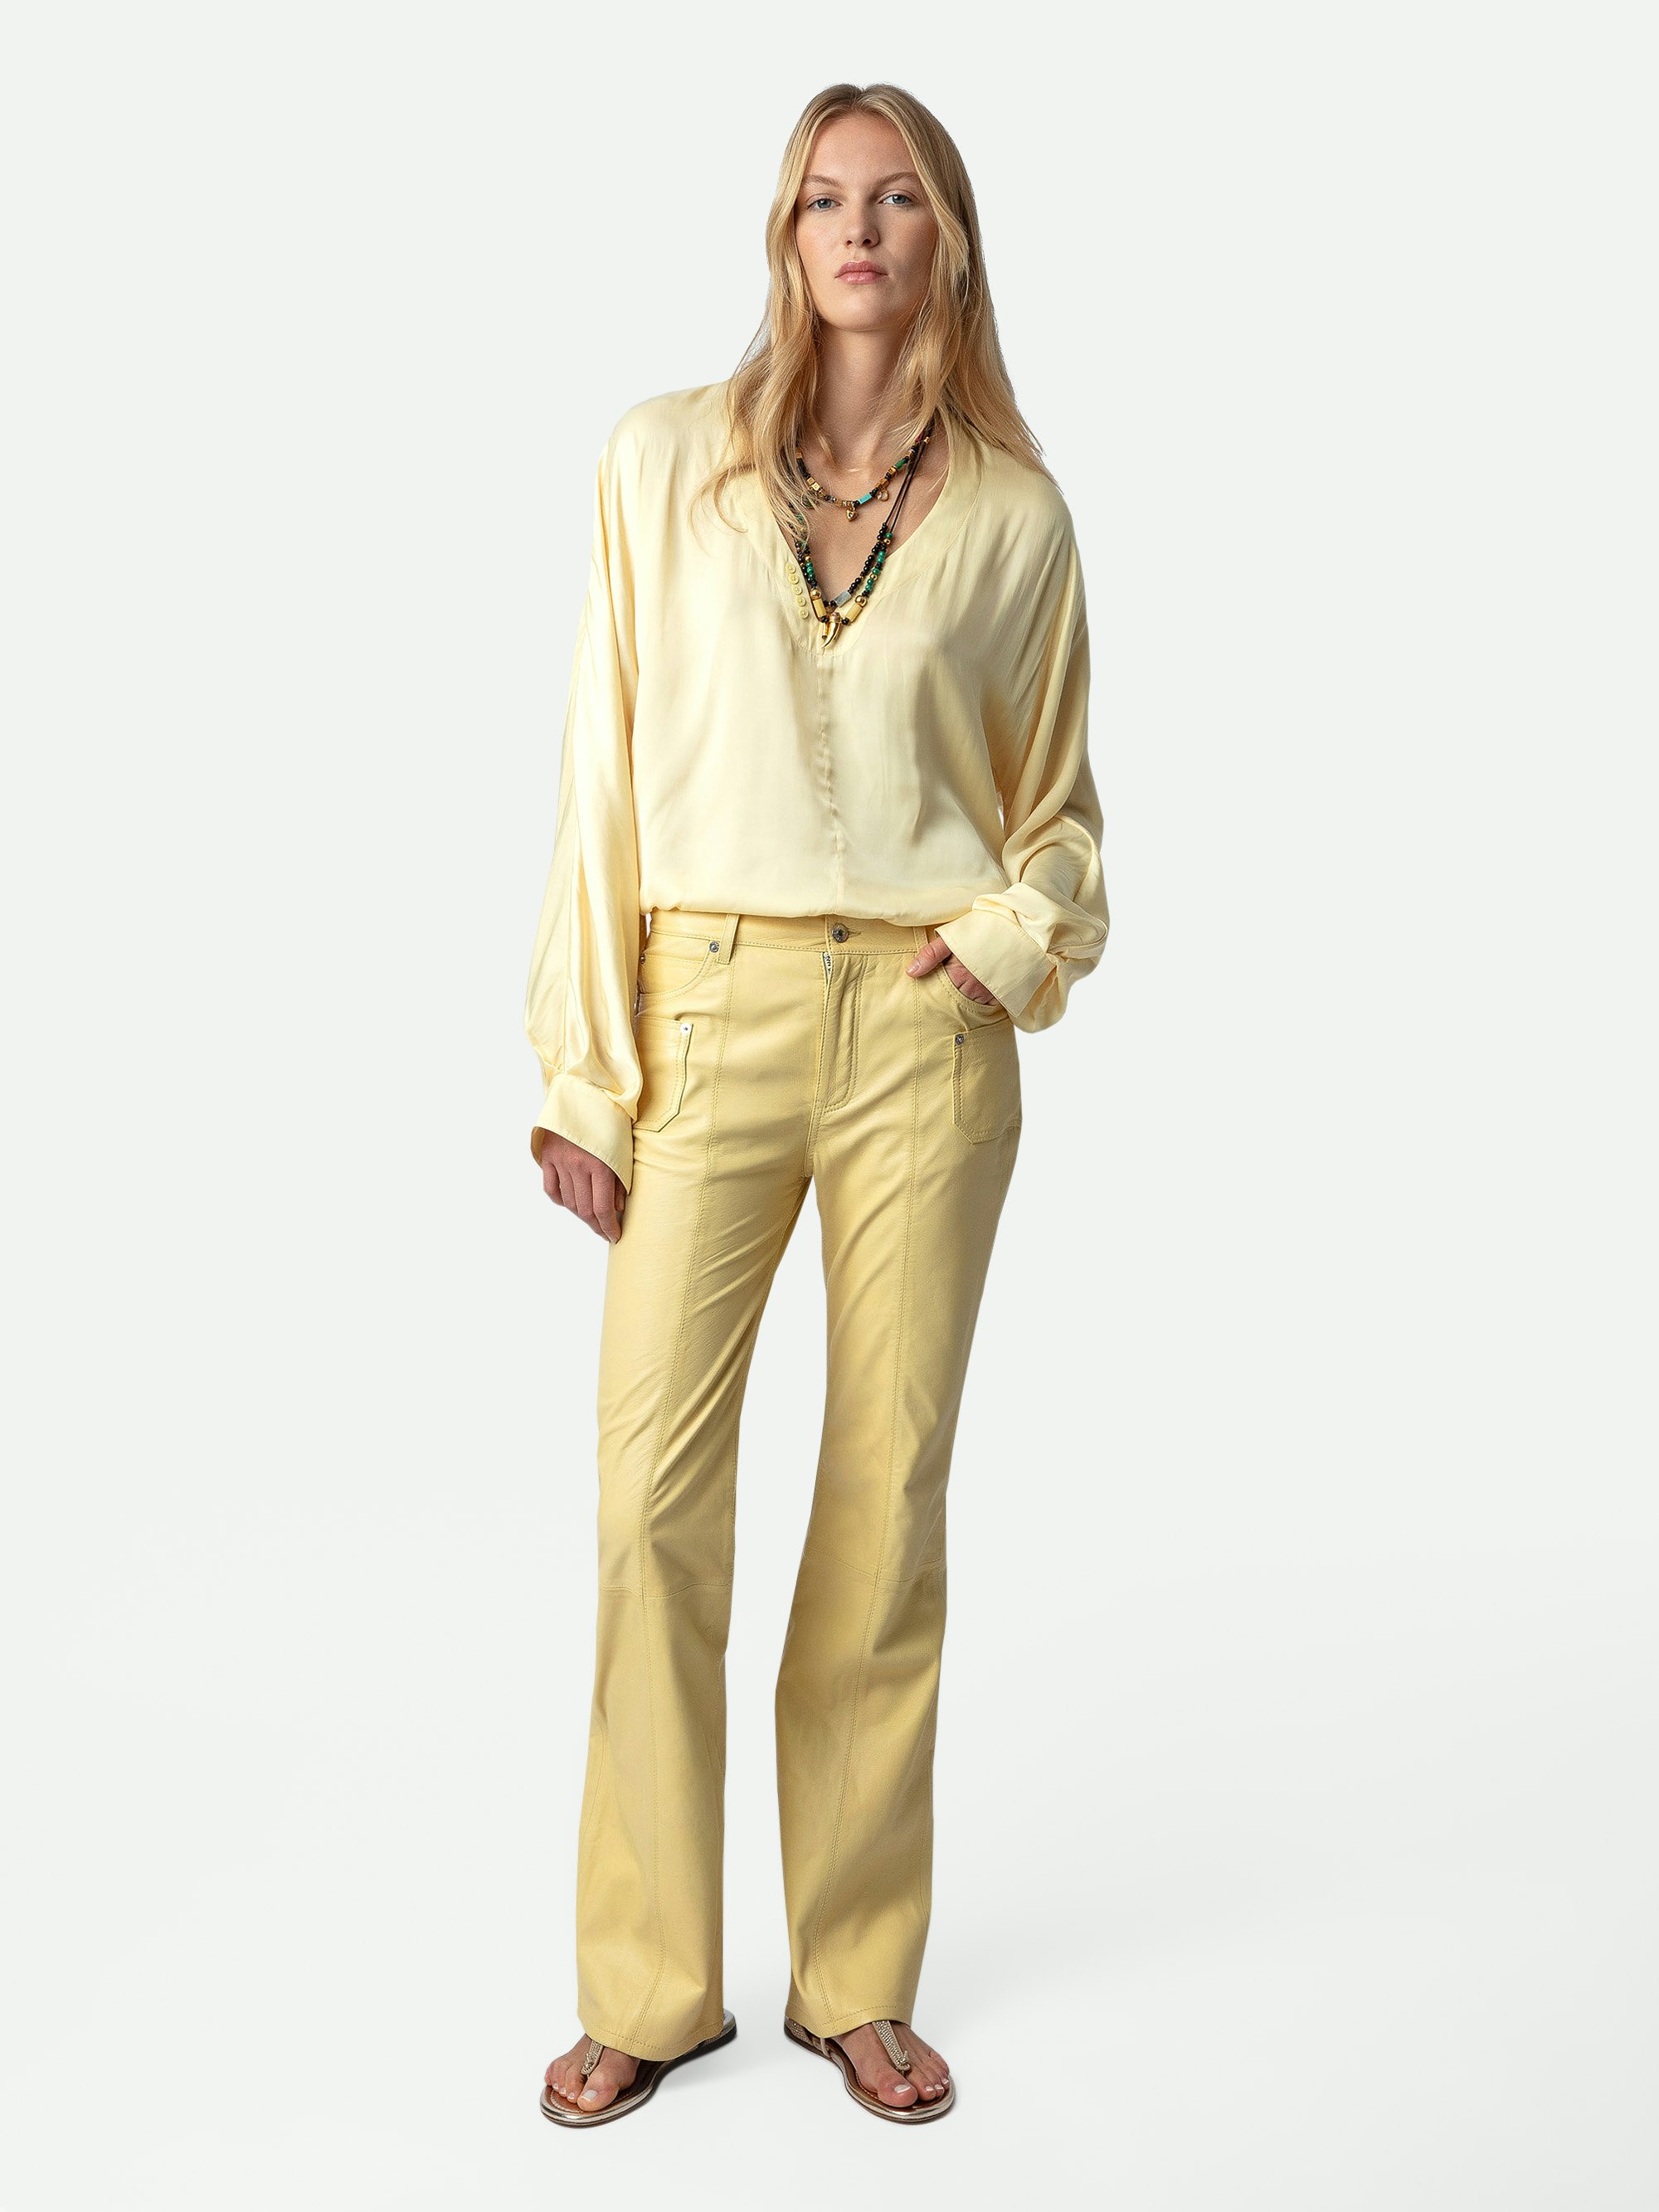 Blusa Tonastir de Satén - Blusa de satén en color amarillo claro con cuello tunecino y mangas largas.